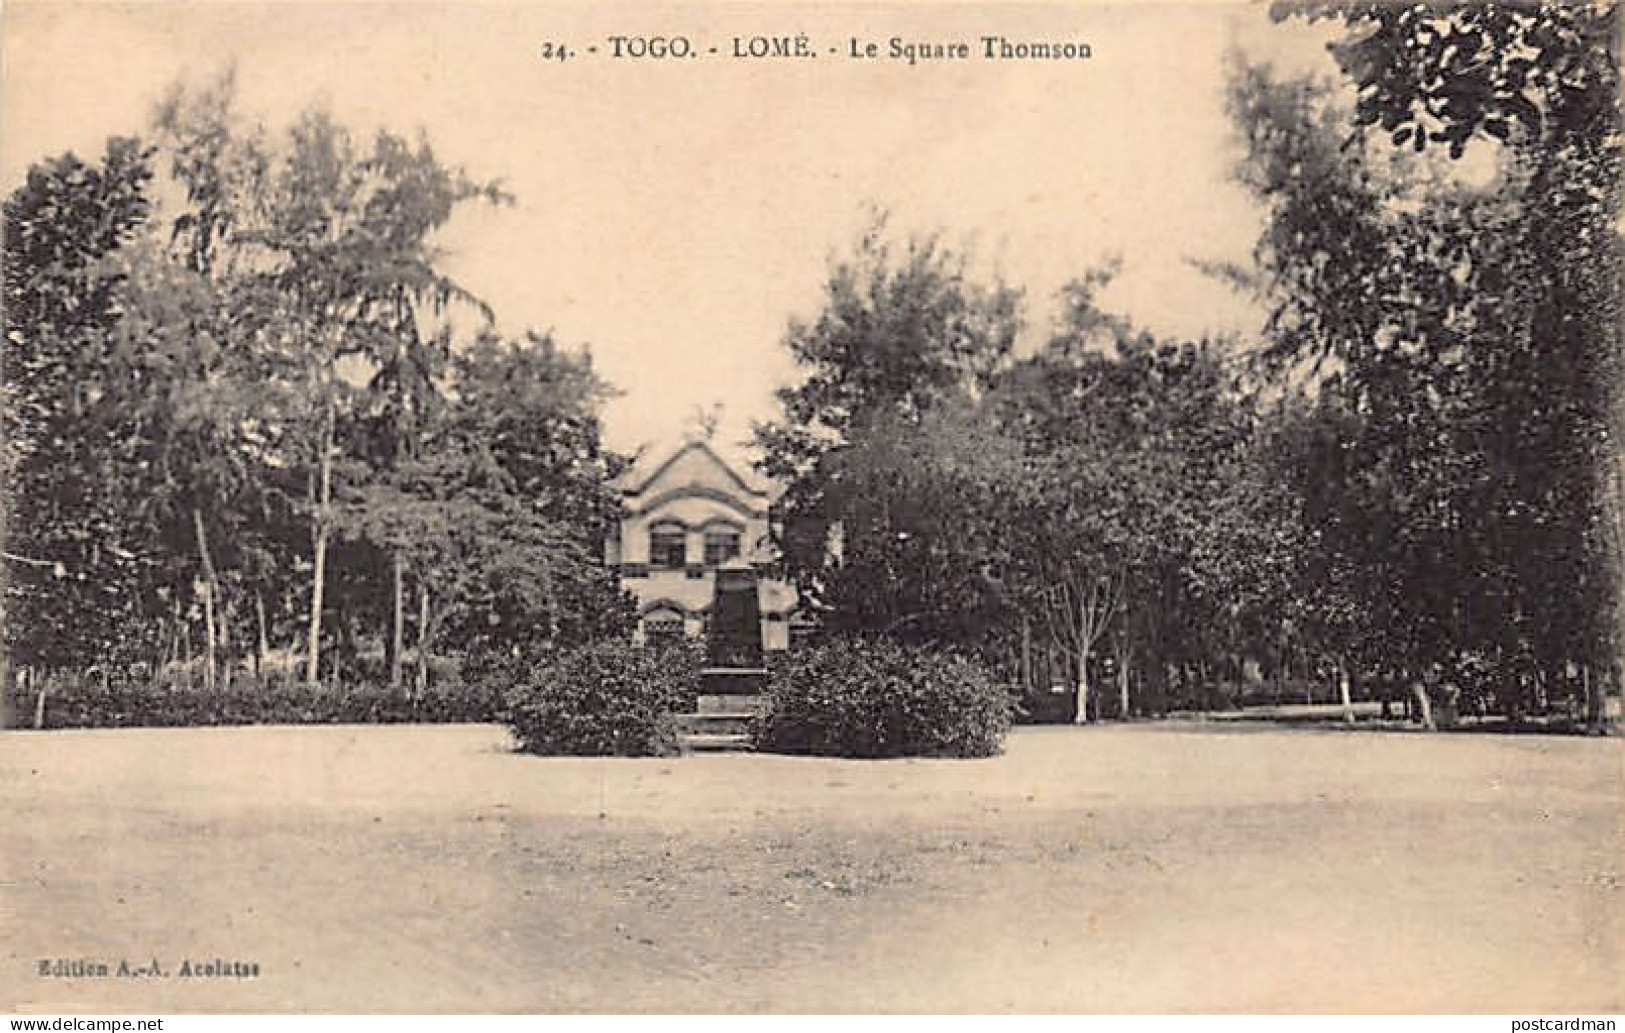 Togo - LOMÉ - Le Square Thomson - Ed. A.-A. Acolatsé 24 - Togo